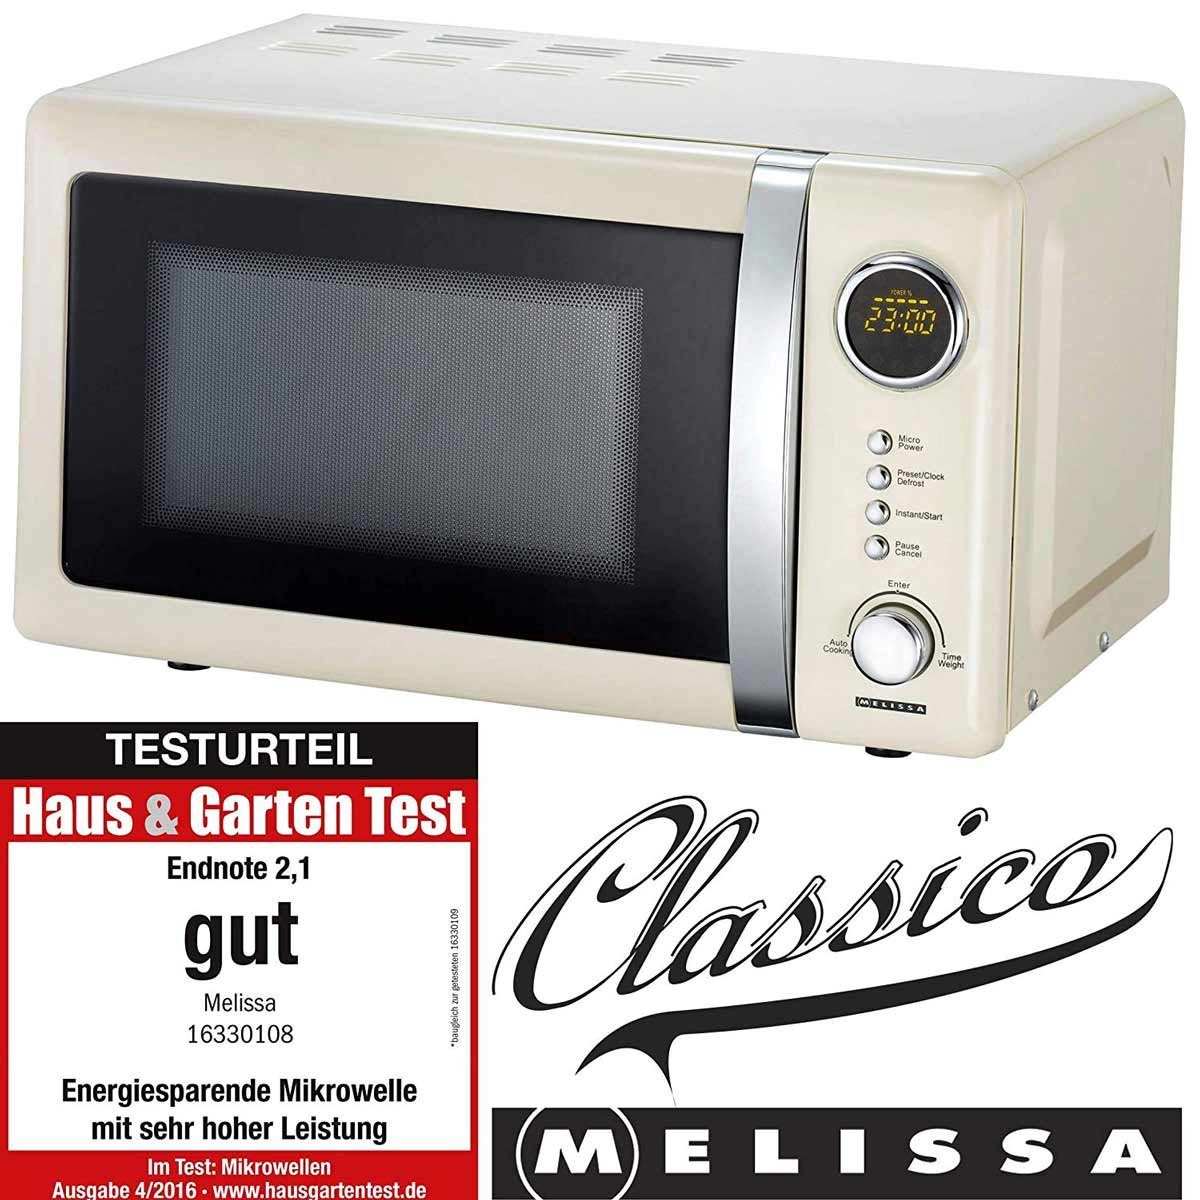 MELISSA Mikrowelle Retro Design 16330108 cremefarben online kaufen | OTTO